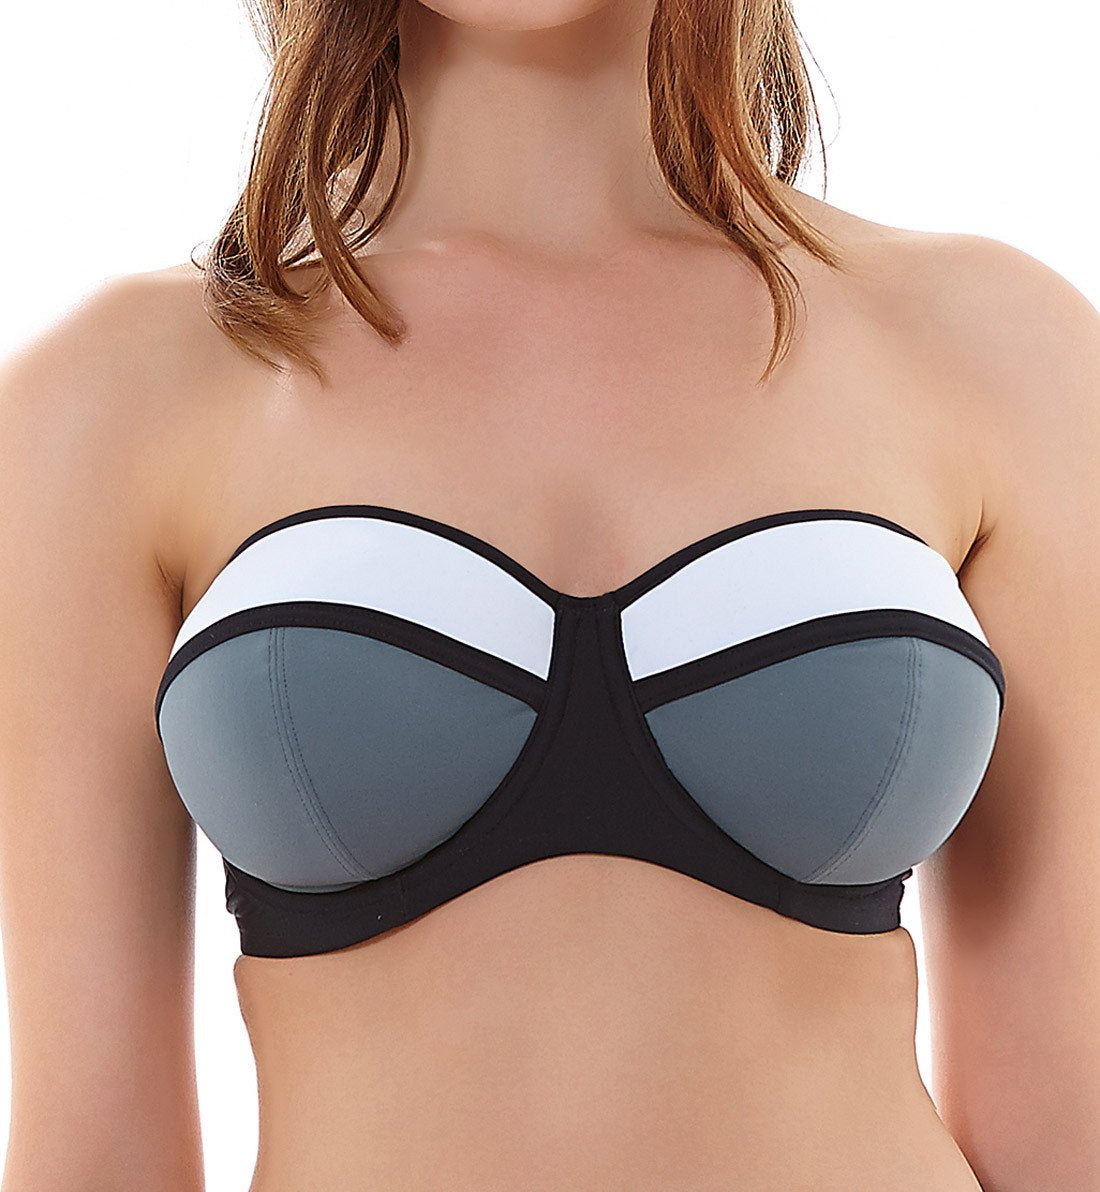 Freya Bondi Padded Bandeau Underwire Bikini Top (3963),30DD,Black - Black,30DD